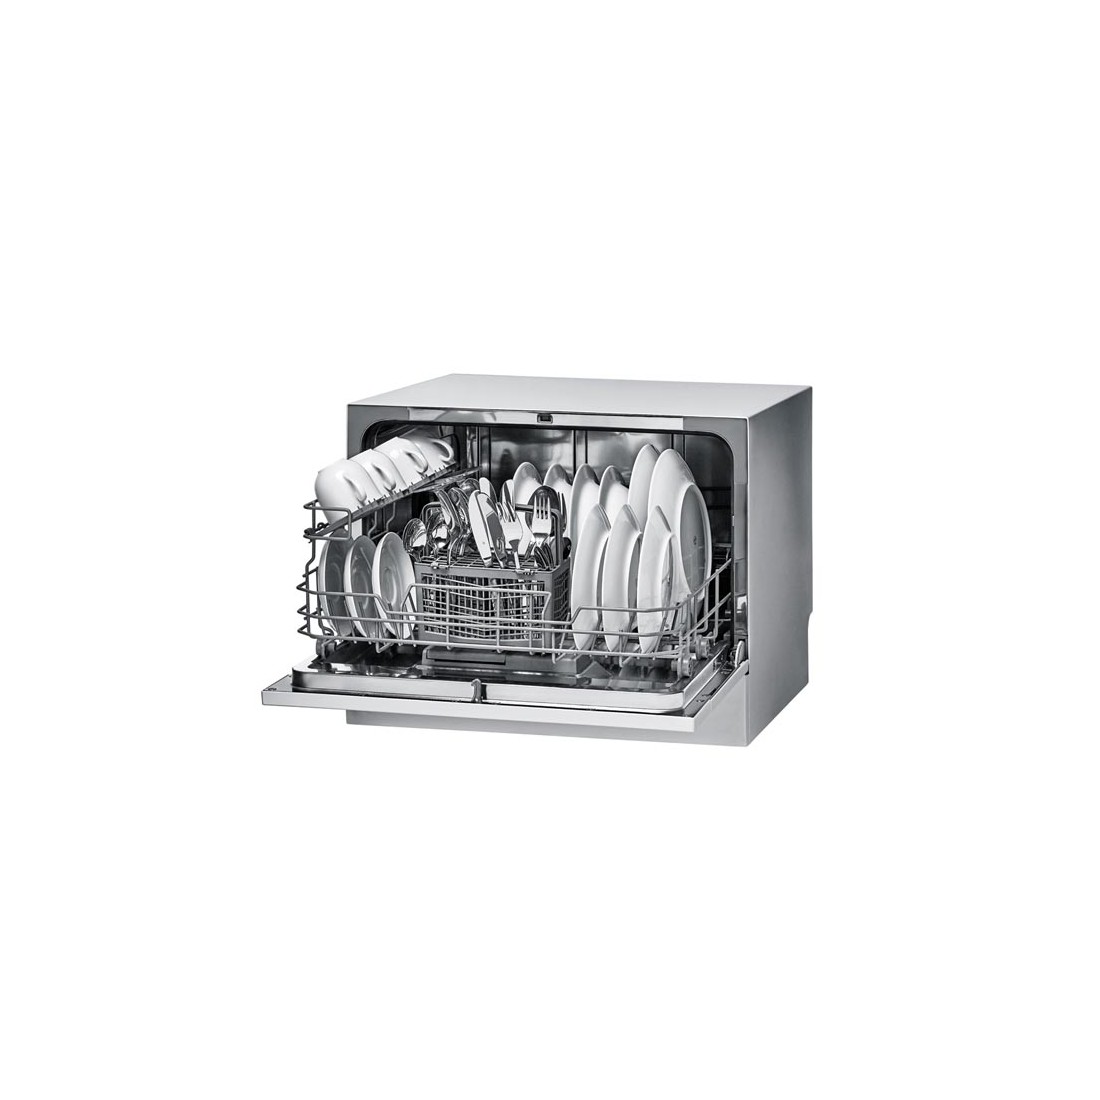 Lavavajillas Compacto - Candy CDCP 6S/E, 6 servicios, 51dB, 55 cm,  Eficiencia F, Plata